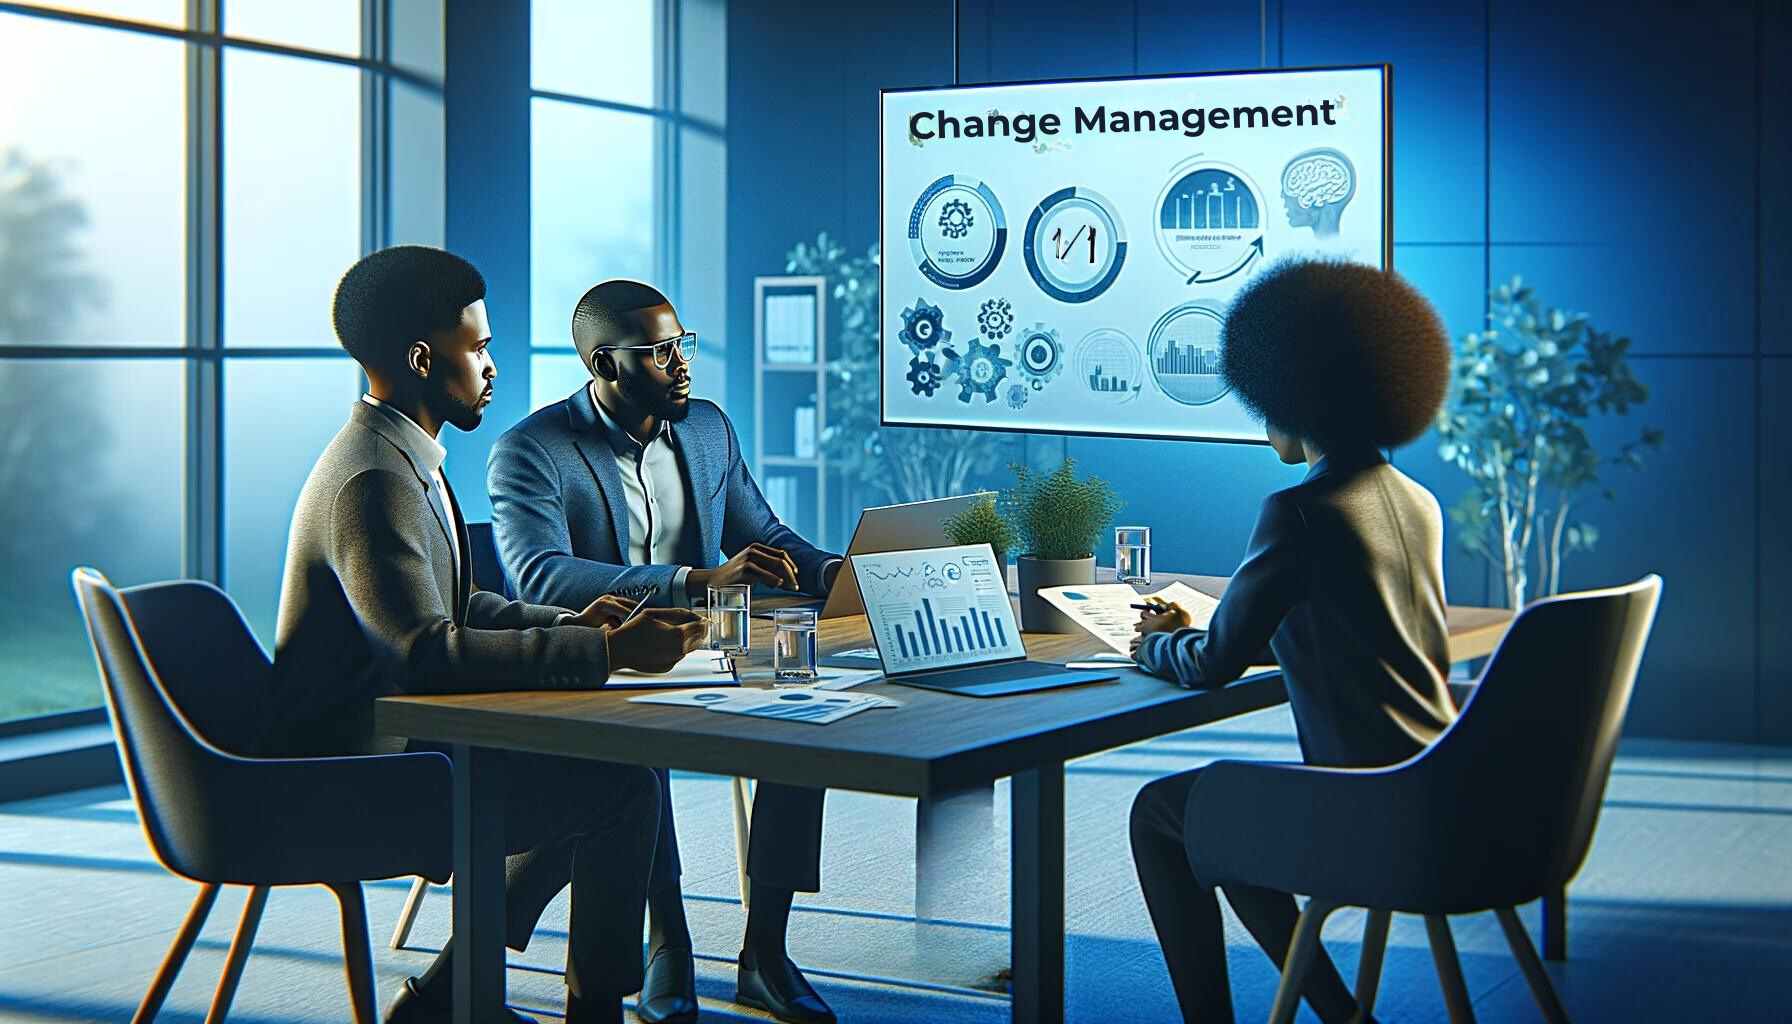 Um homem e duas mulheres de ascendência africana engajam-se em uma discussão profunda sobre Change Management em uma sala de reuniões moderna, cercados por documentos e telas digitais que destacam conceitos e aplicações práticas.